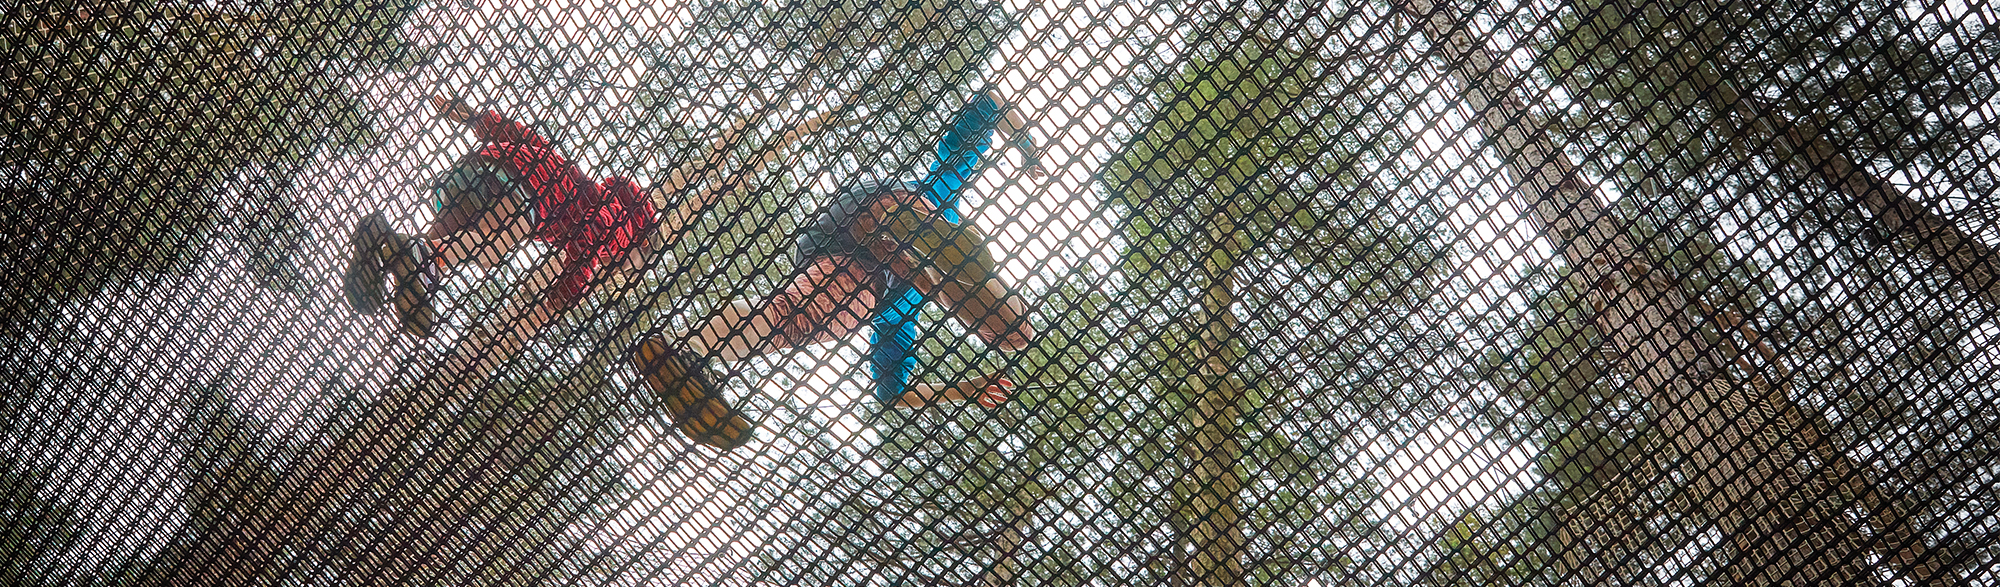 treetop nets from below